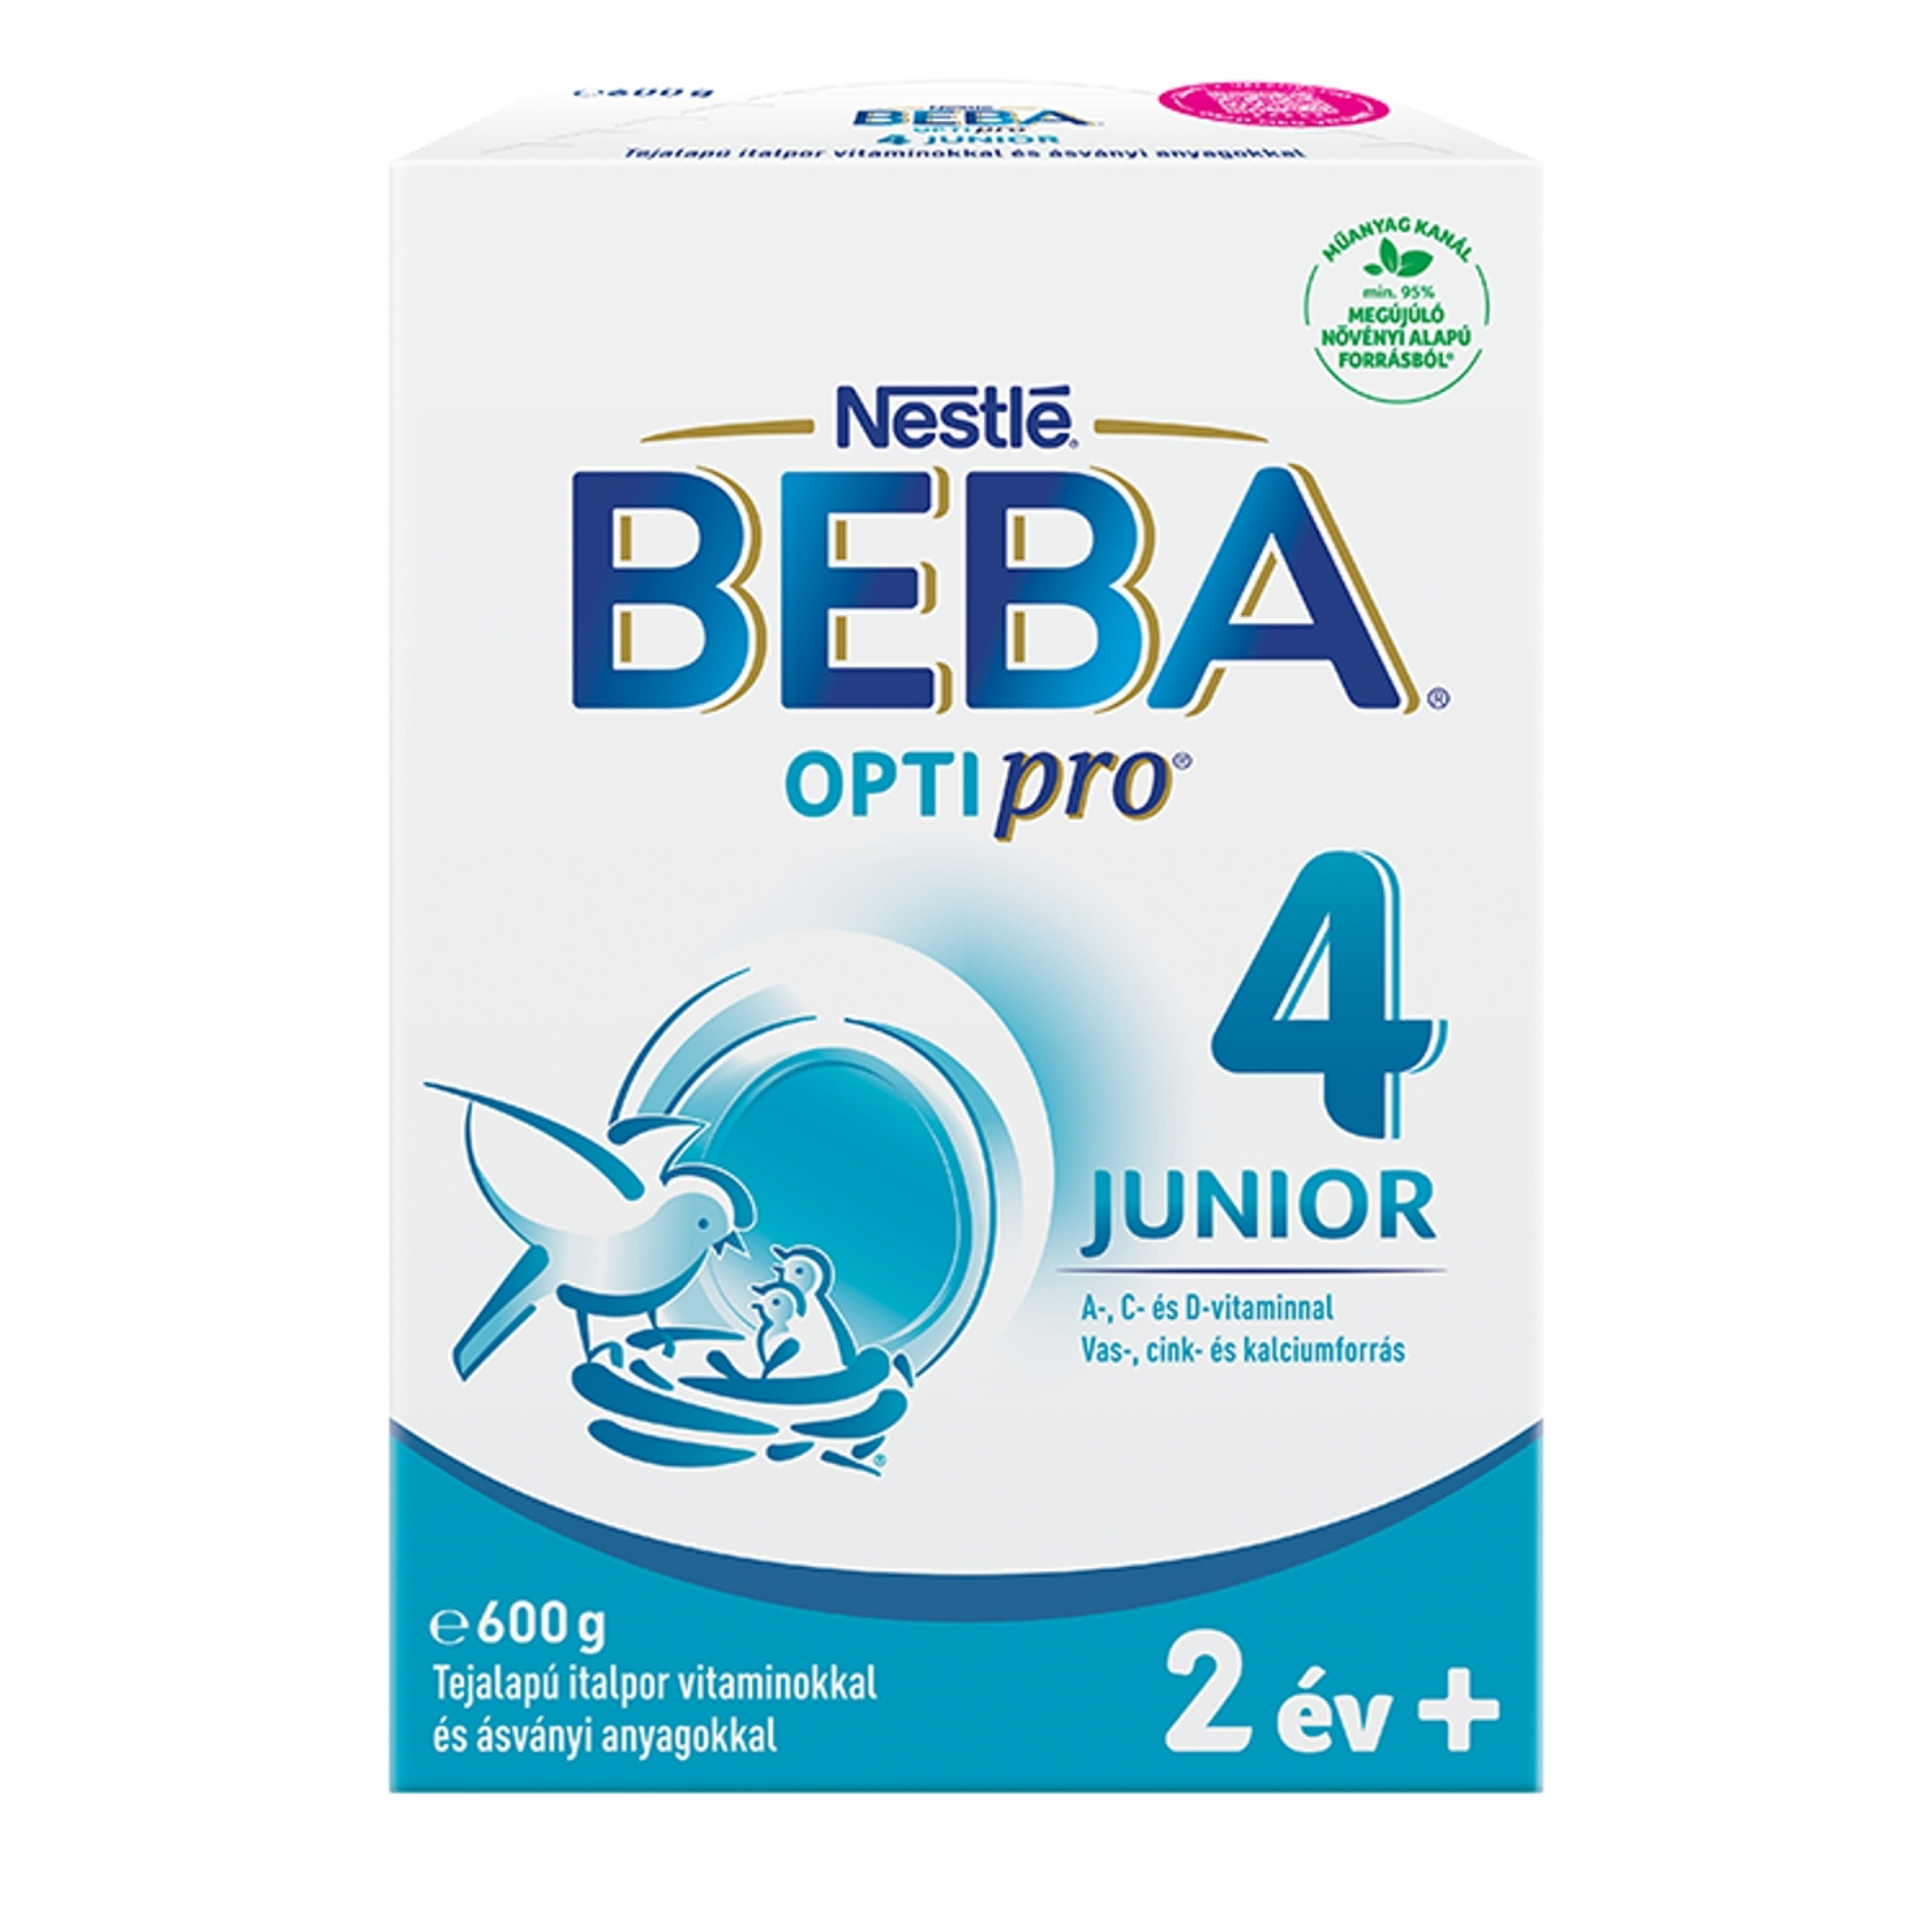 Beba Optipro 4 Junior tejalapú italpor vitaminokkal és ásványi anyagokkal 2 éves kortól - 600 g